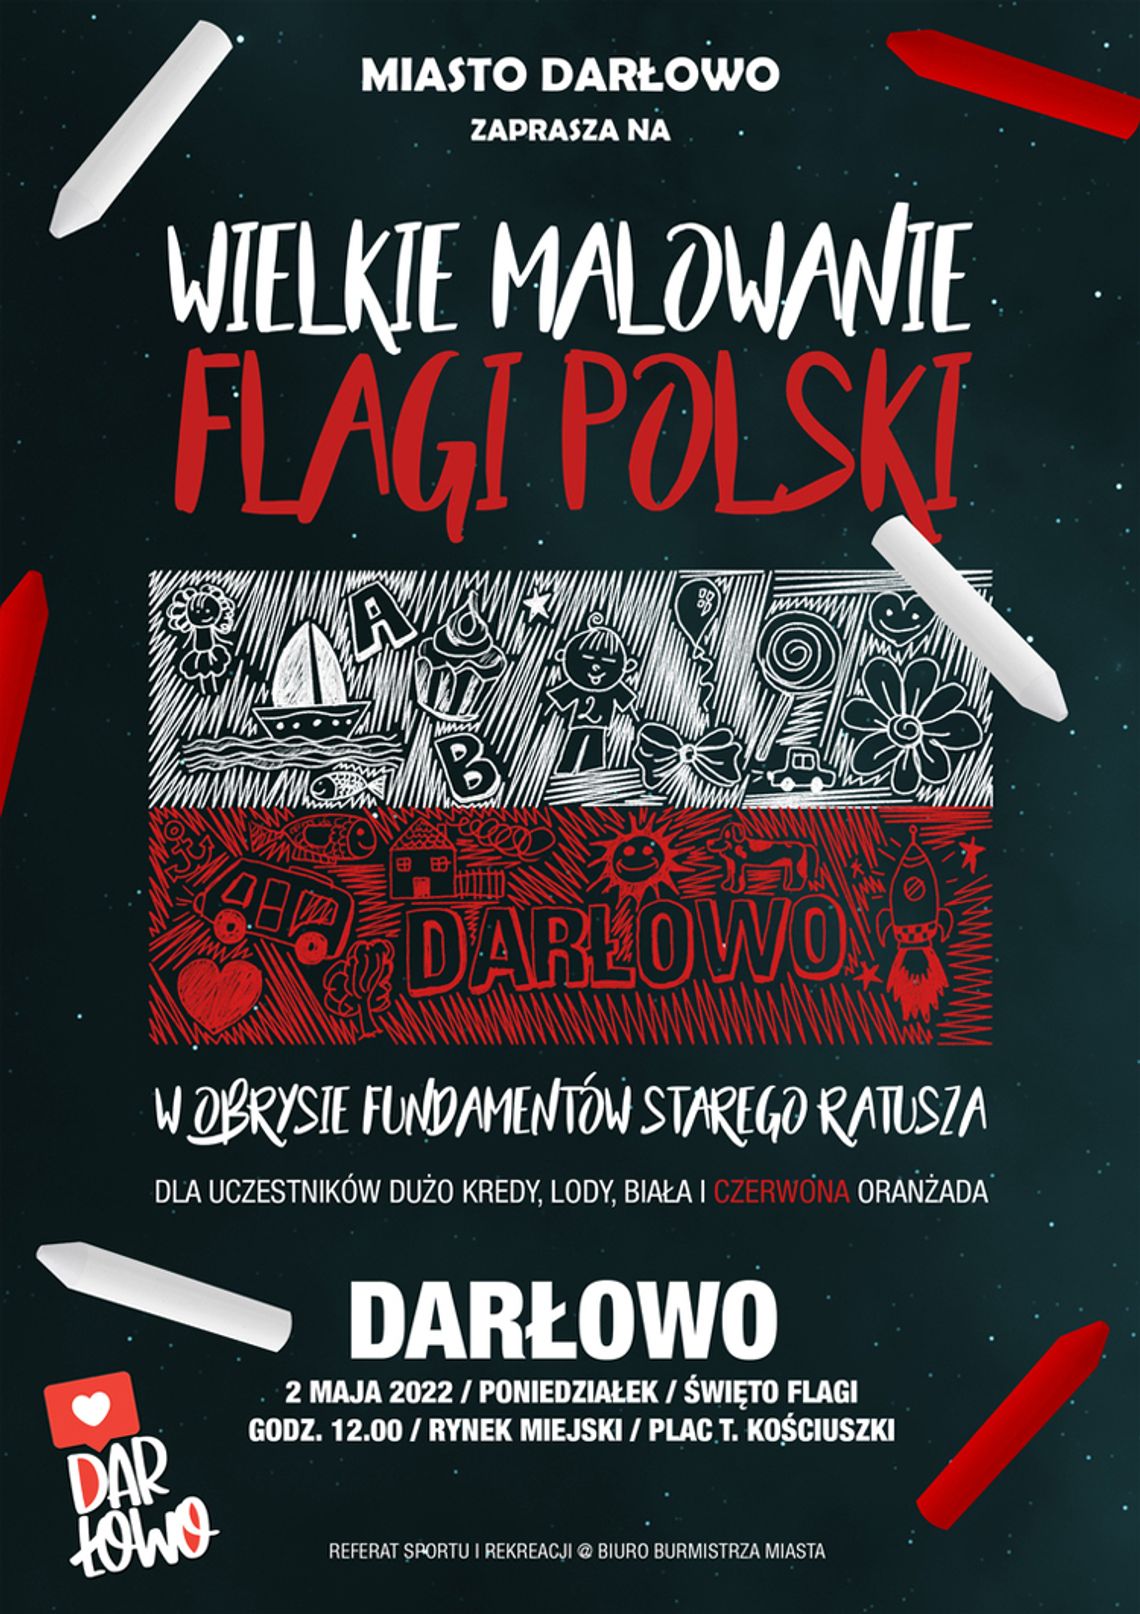 Darłowo: Wielkie Malowanie Flagi Polski